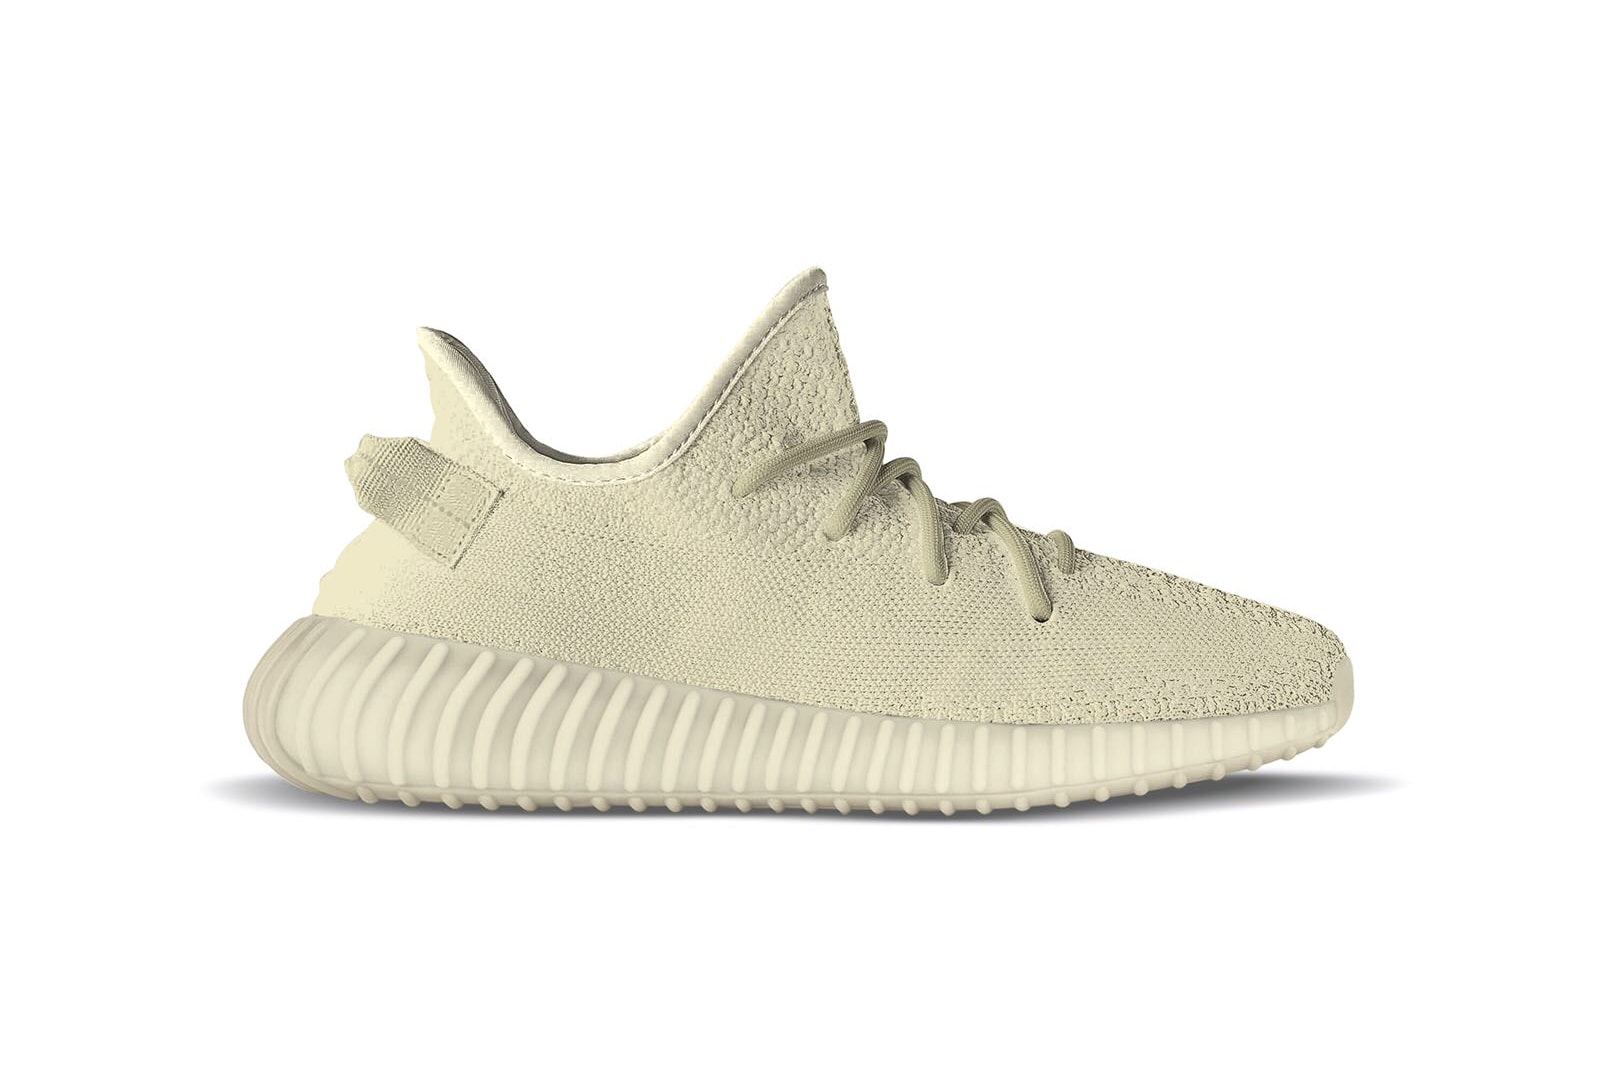 adidas Originals YEEZY BOOST 350 V2 Butter Peanut Butter Kanye West footwear june 2018 yeezy mafia sneakers leaks